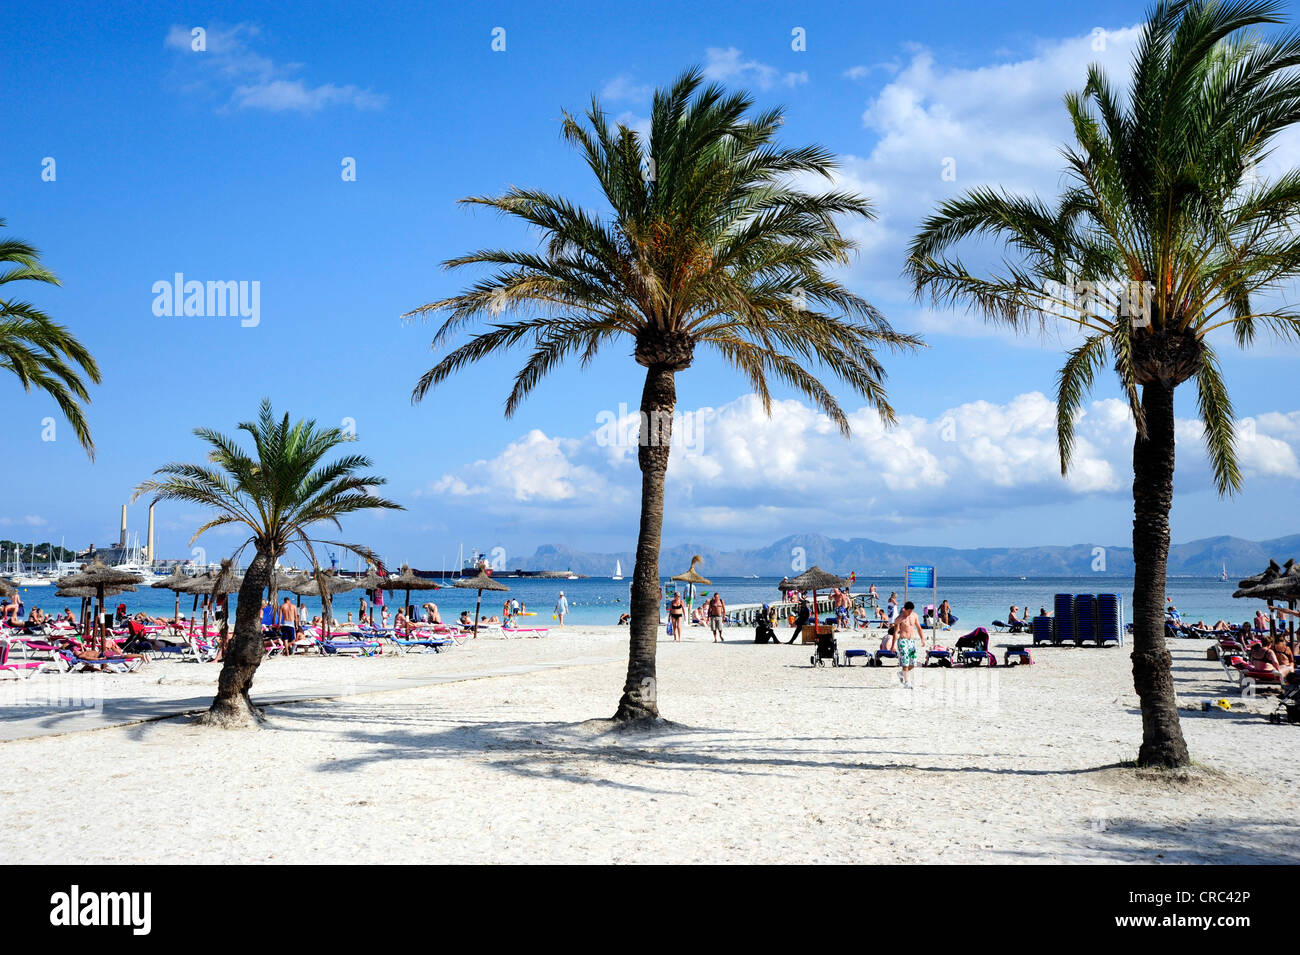 Playa y palmeras en la ciudad balnearia de Puerto de Alcudia, Port d'Alcudia,  Mallorca, Islas Baleares, el Mar Mediterráneo Fotografía de stock - Alamy